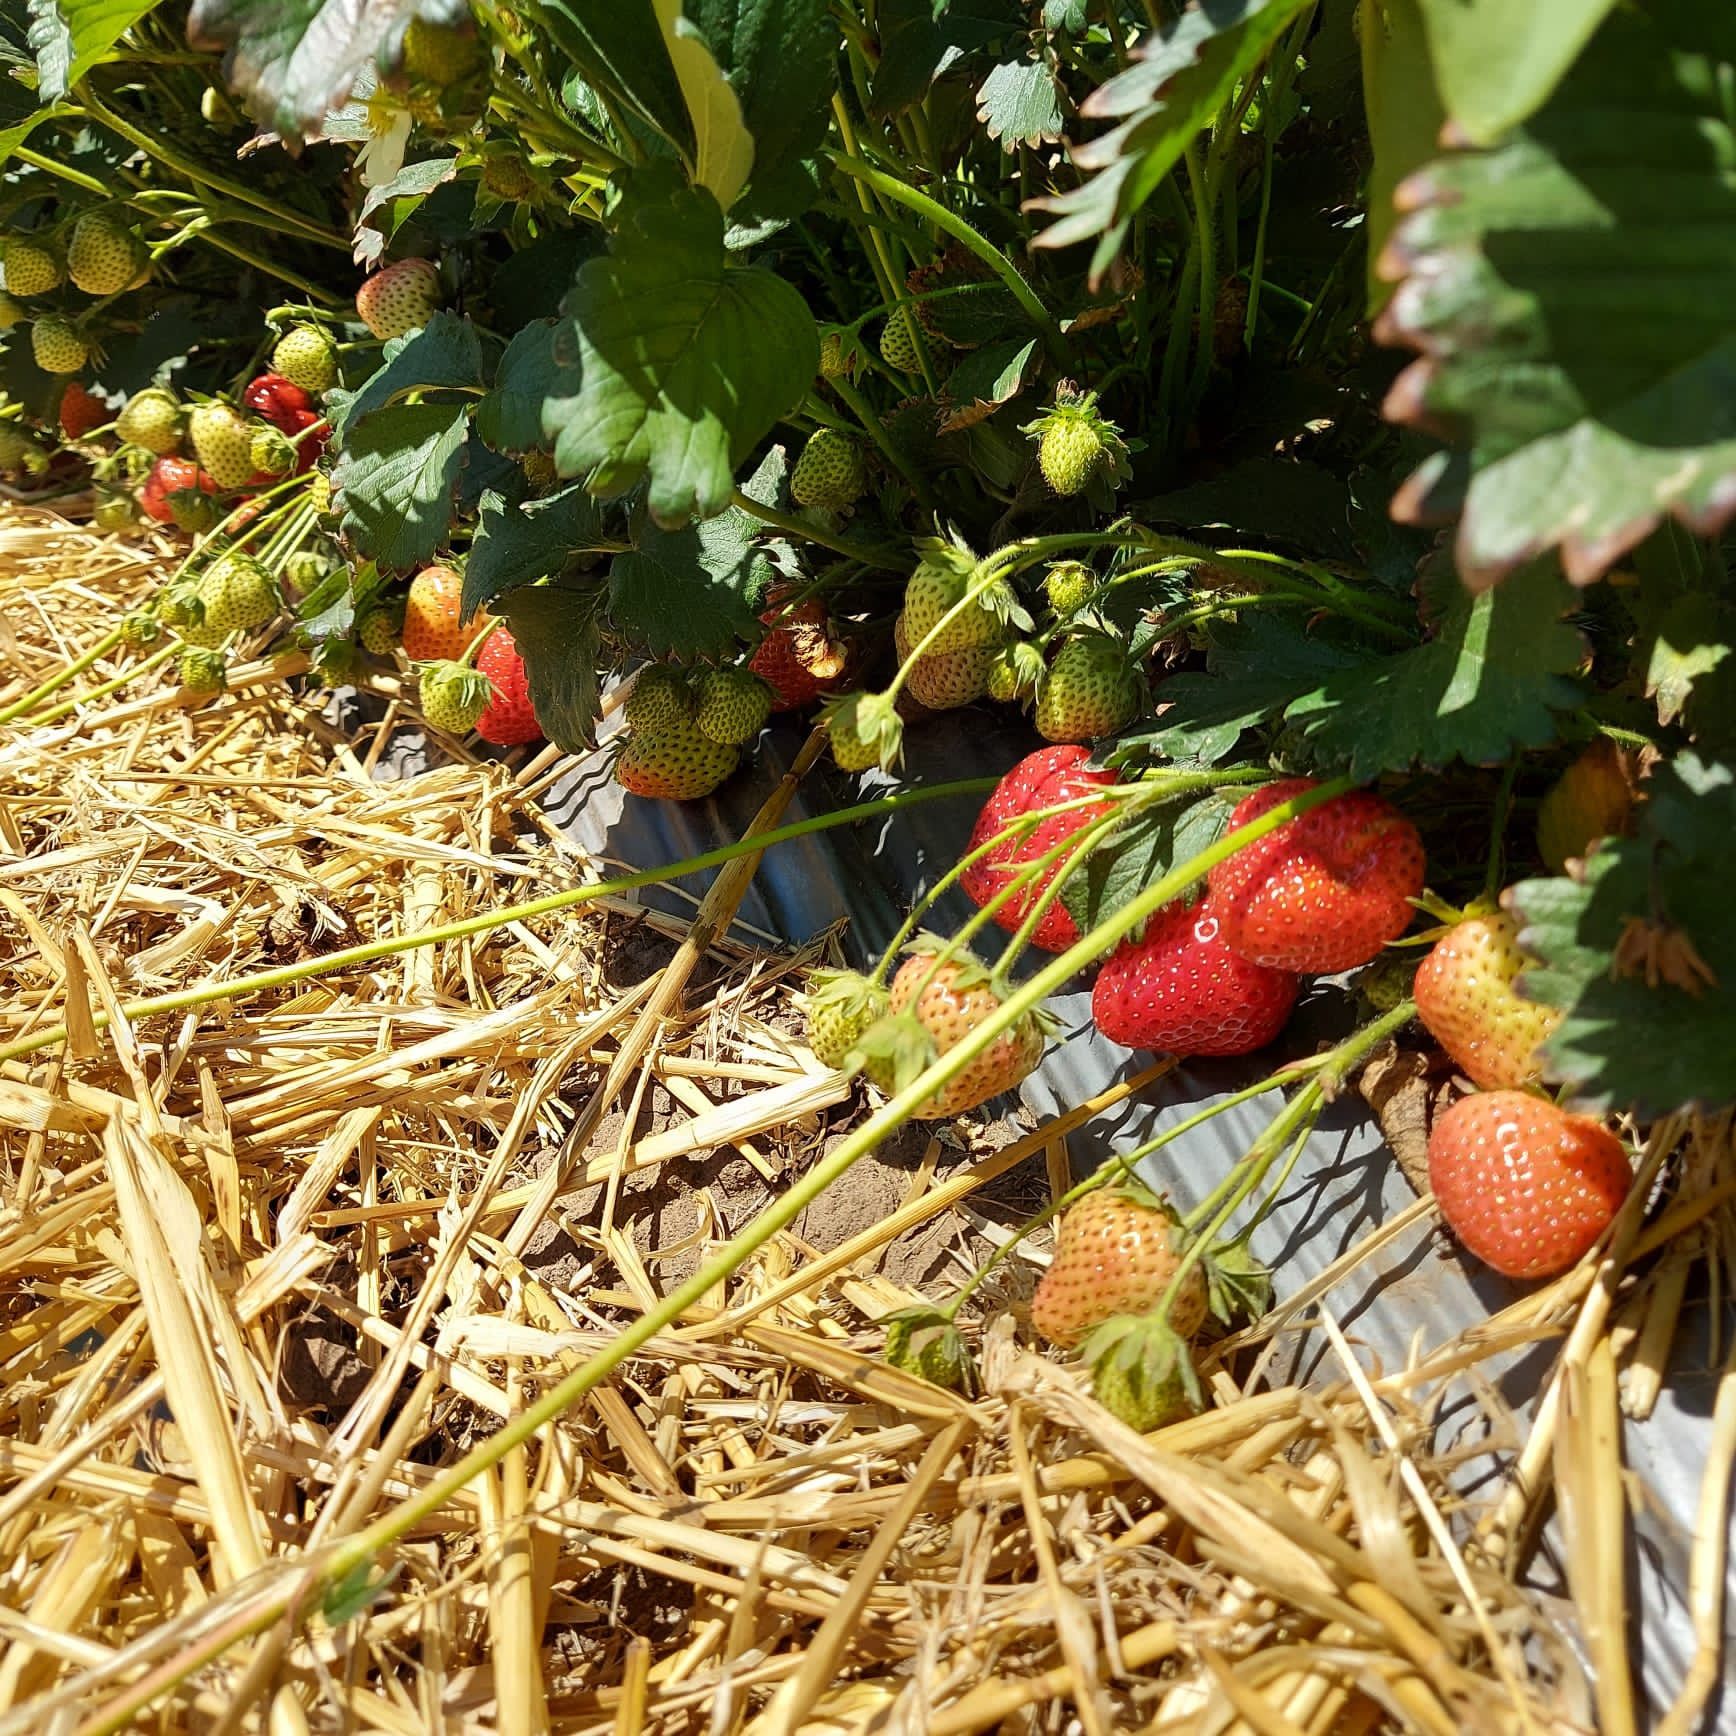 Stoloni căpșuni soiuri remontante Albion dar și diverse soiuri unifere